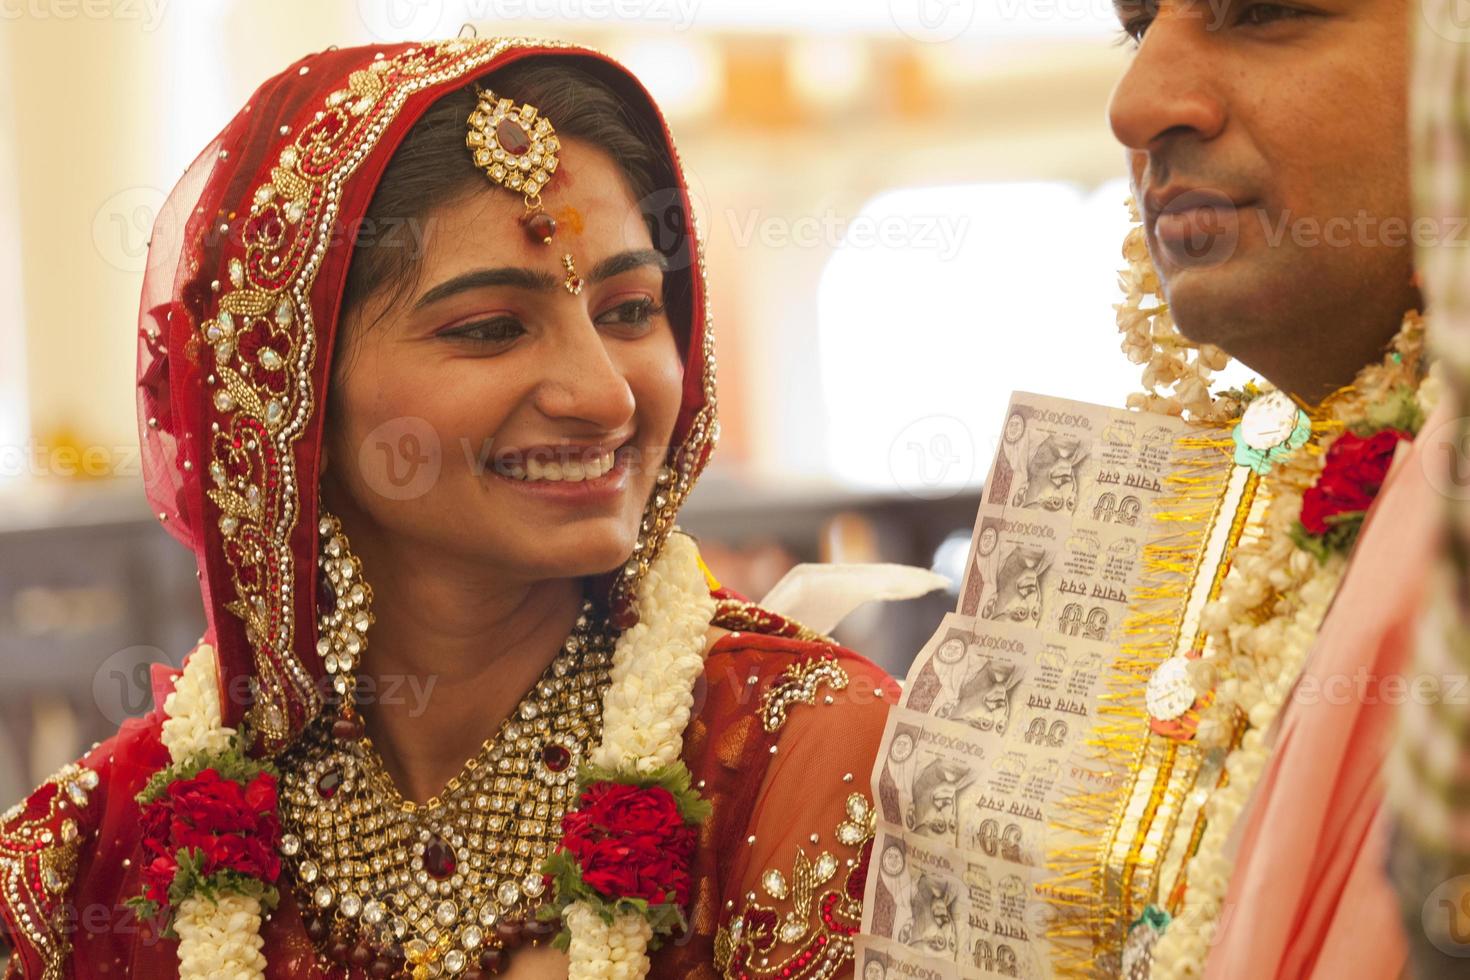 casal indiano feliz no casamento. foto